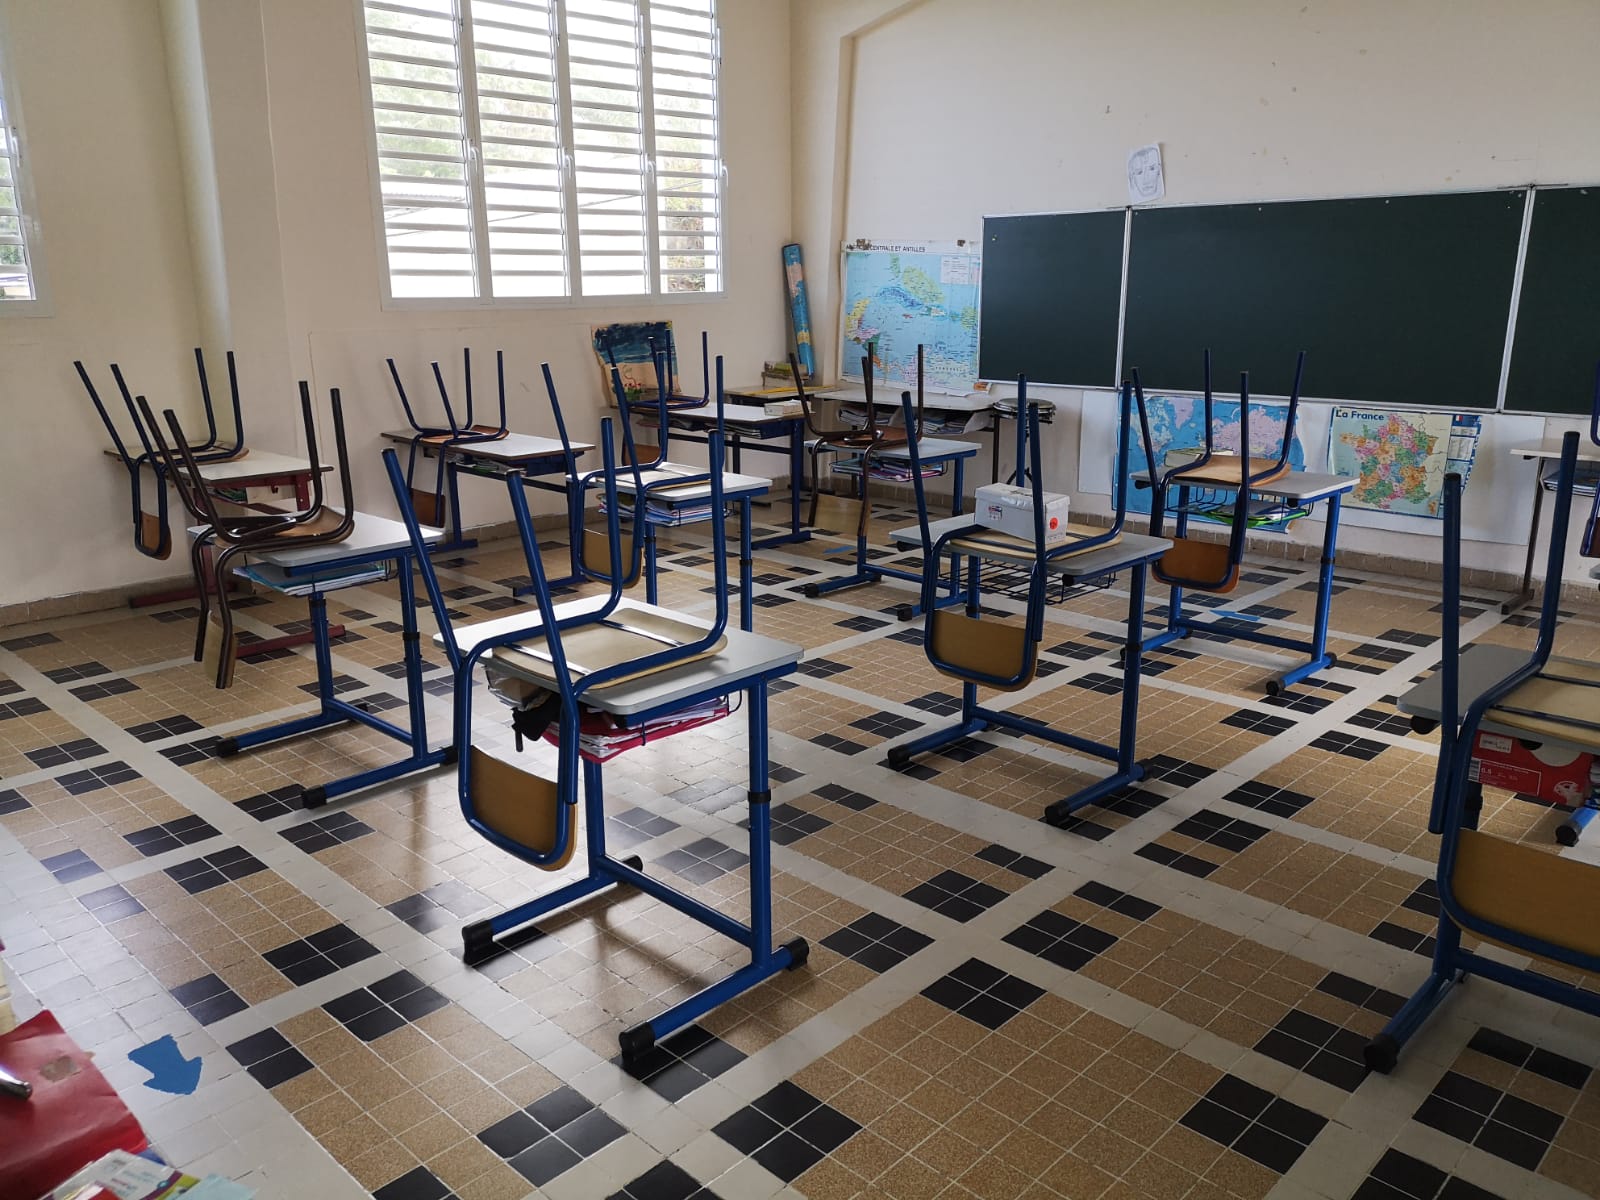     Grève générale : pas de restauration scolaire dans les écoles de Fort-de-France

